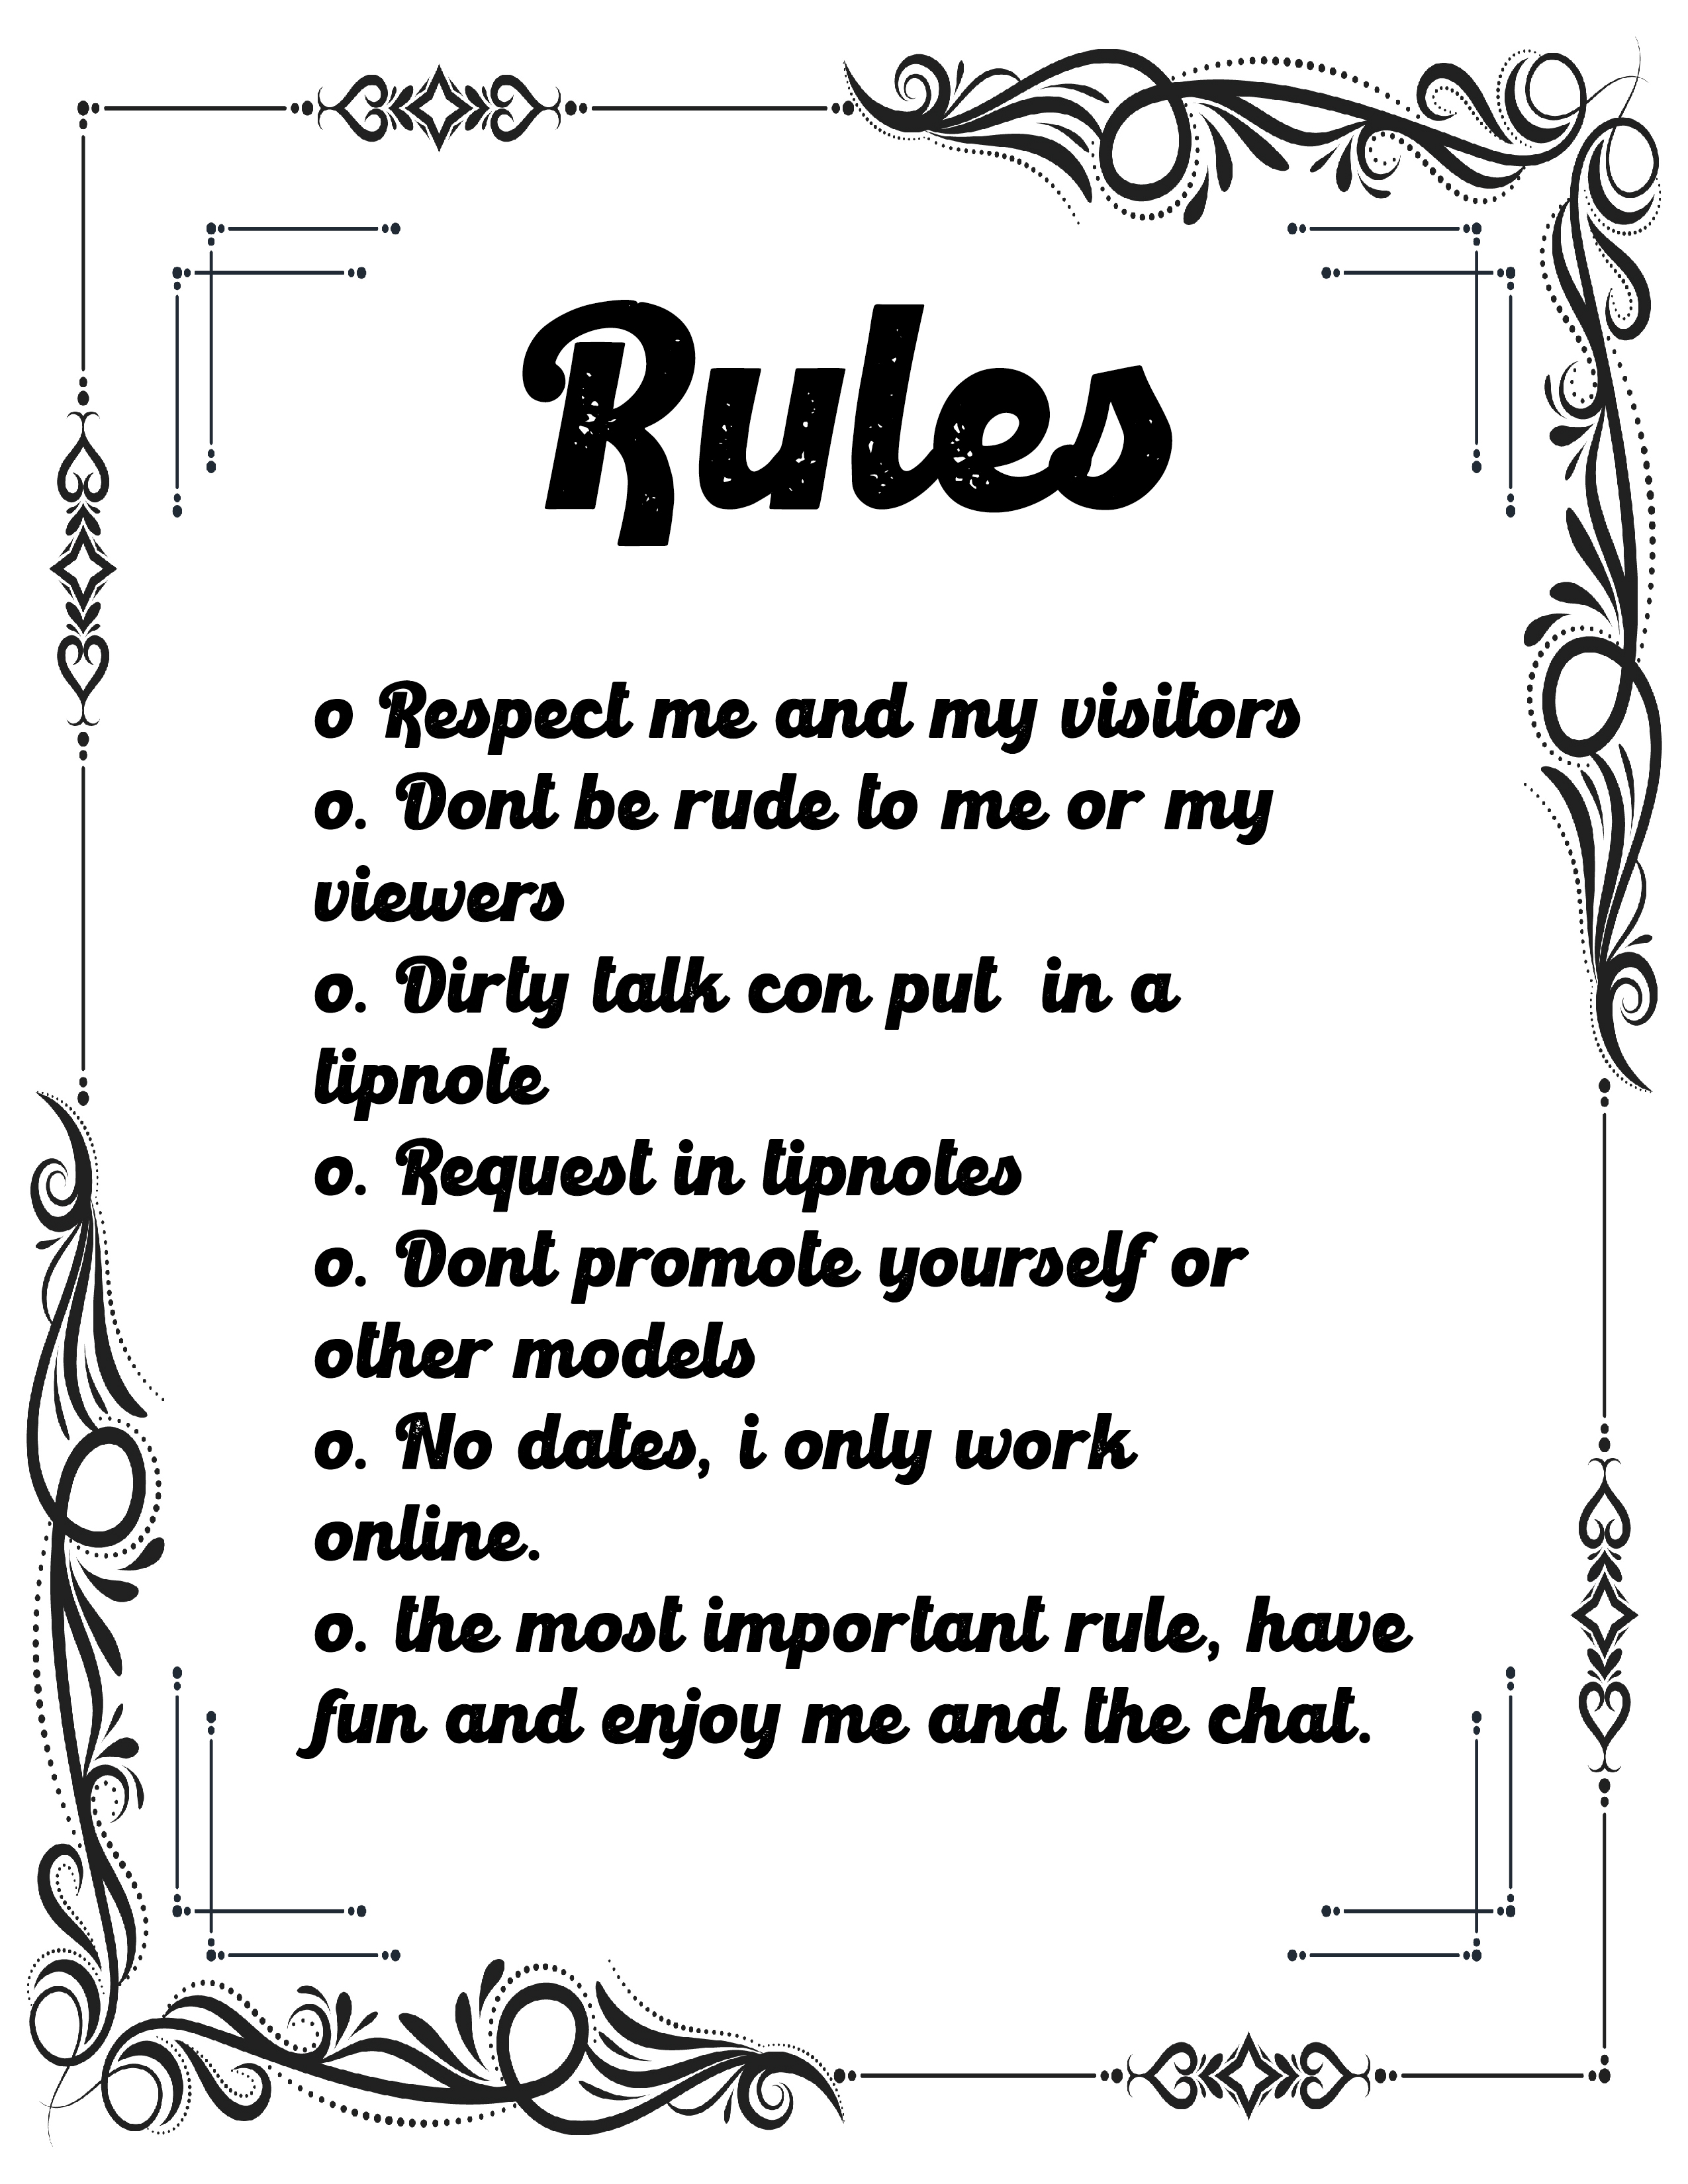 marany My Rules image: 1